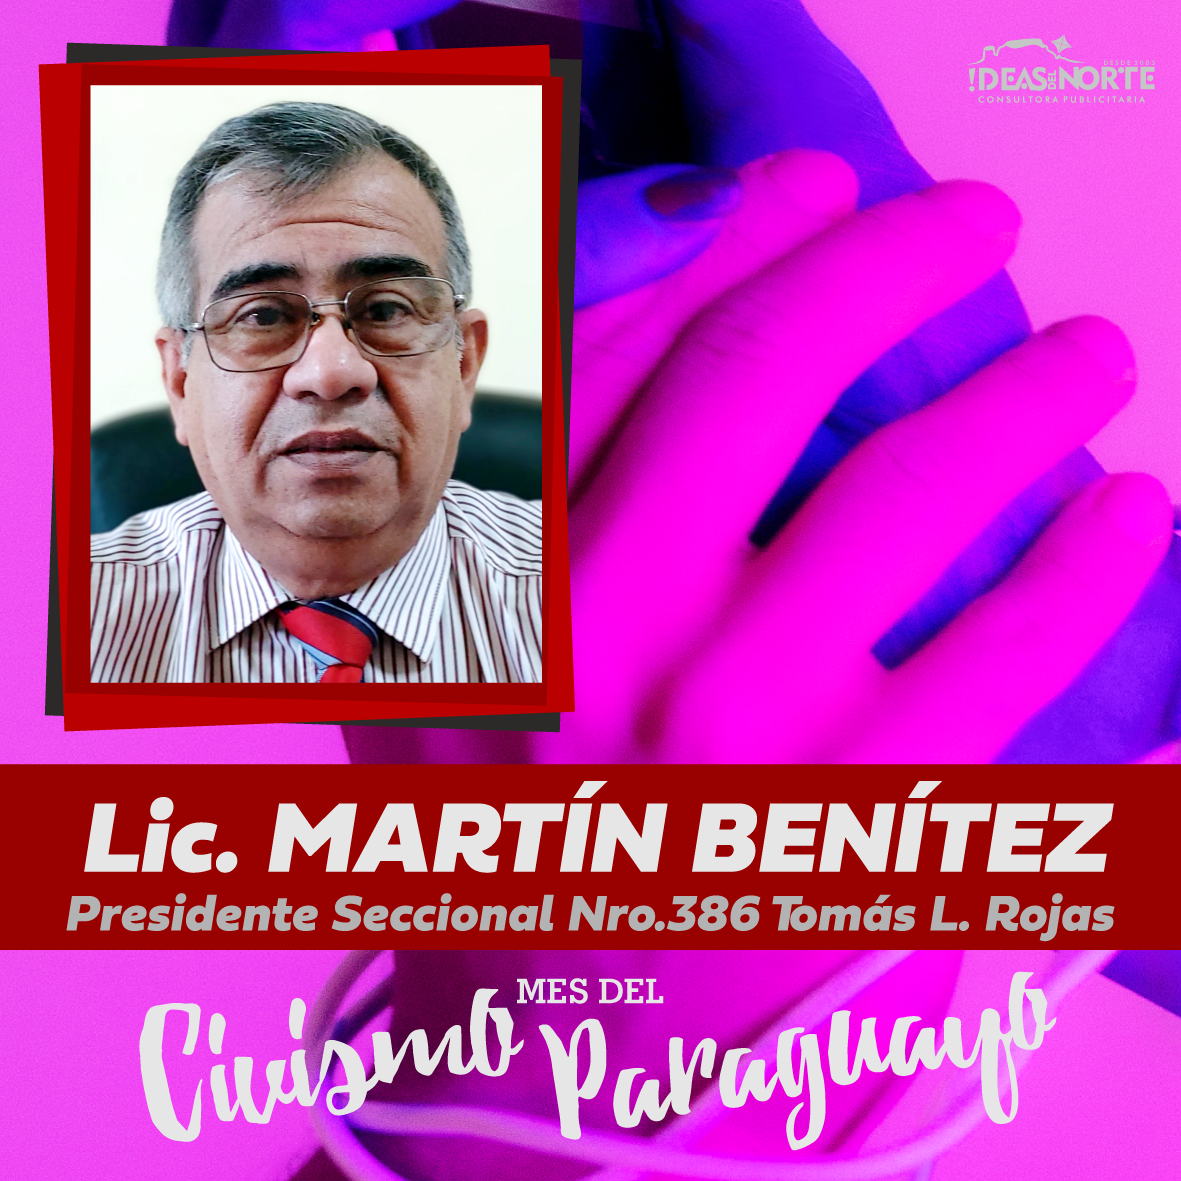 Martín Benítez